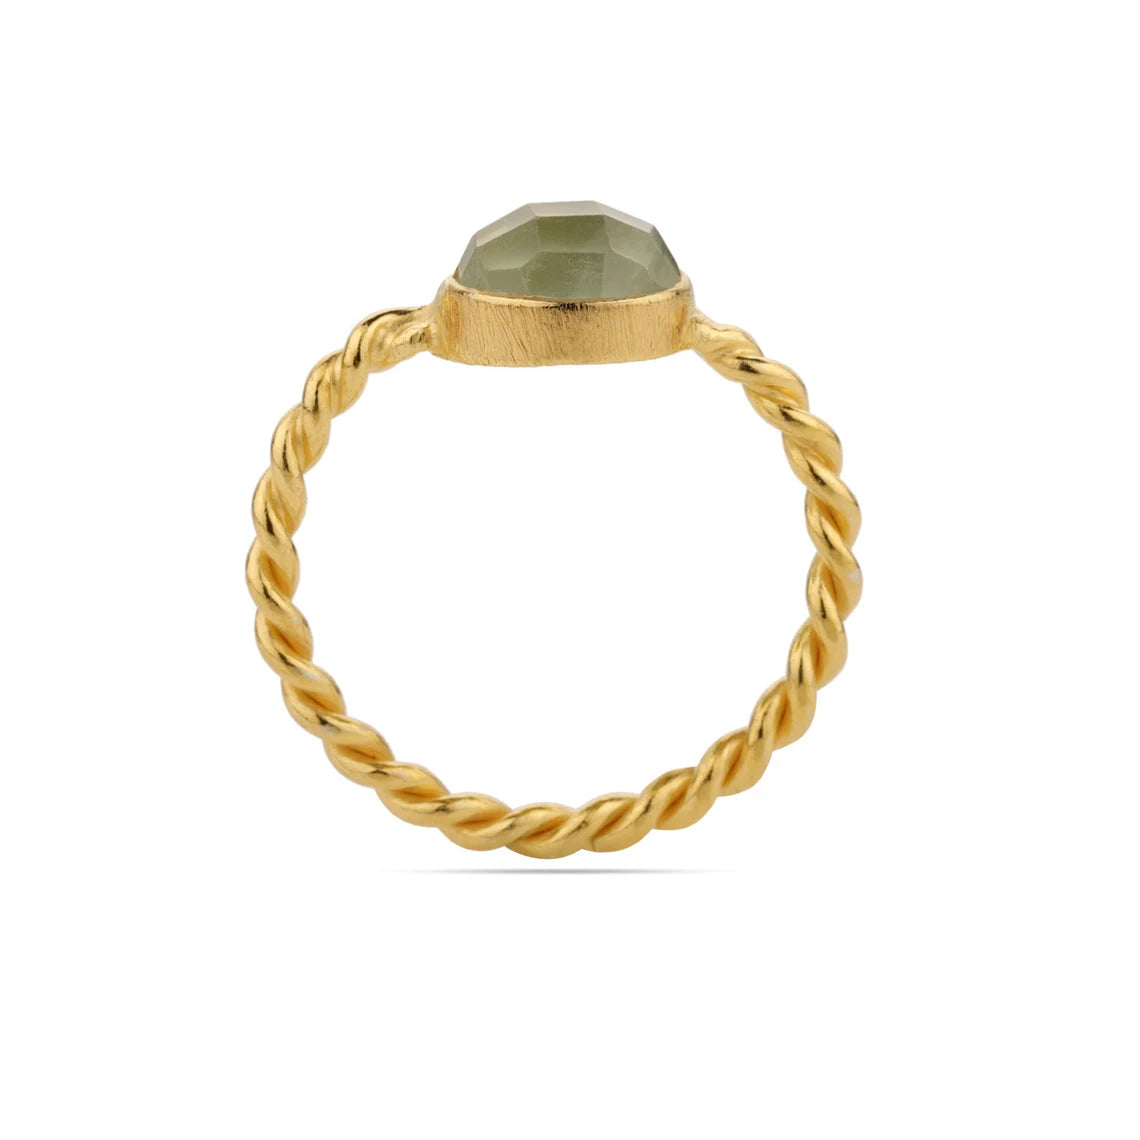 Natural Prehnite Gemstone Ring, Sterling Silver Yellow Gold Ring, Artisan Gift Ring, Stacking Ring ,Natural Prehnite Twisted Band Ring